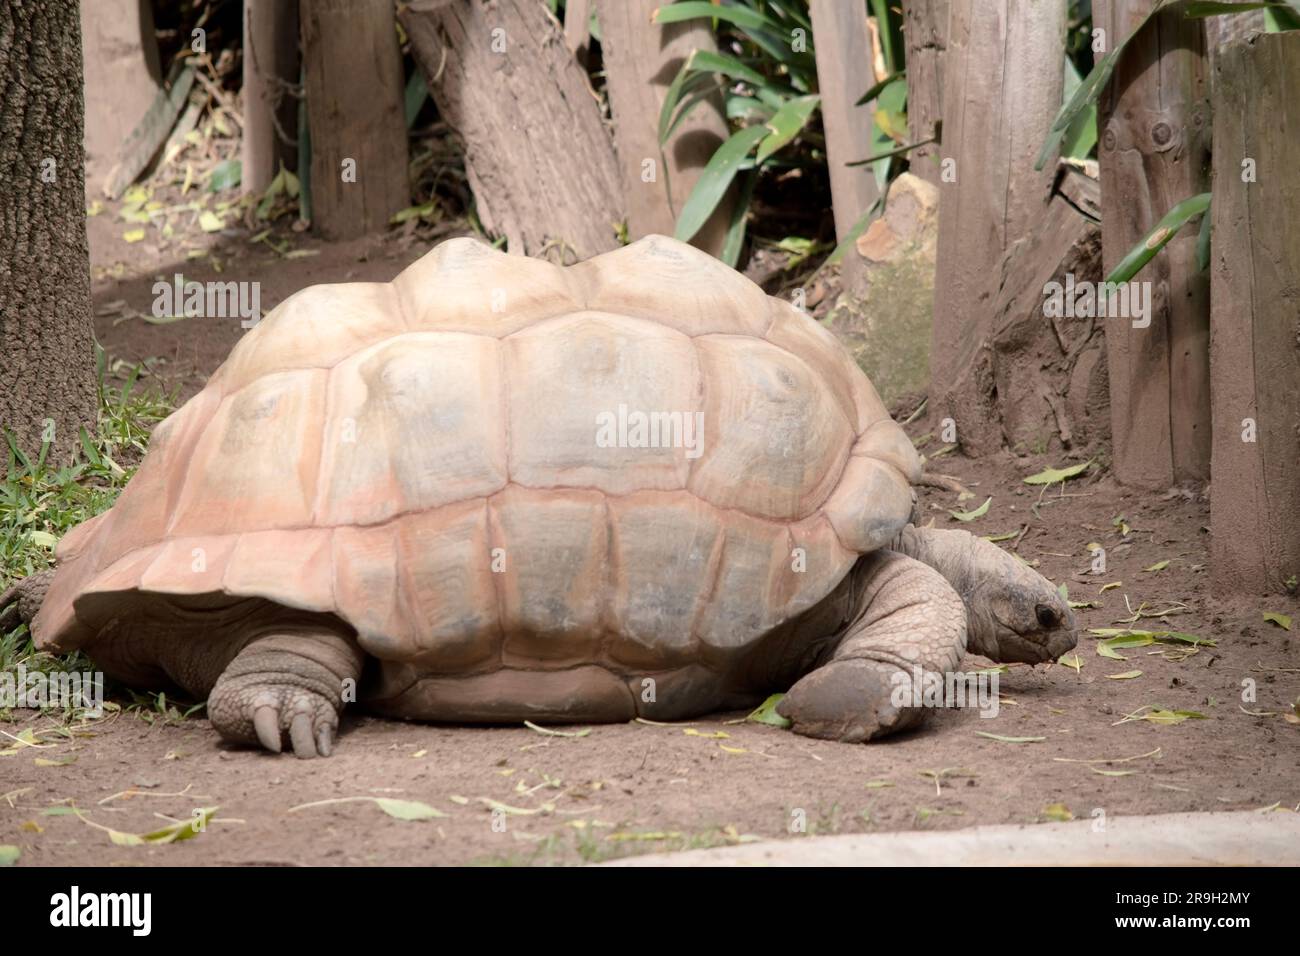 Les tortues géantes ont des jambes épaisses et de petites chambres à air à l'intérieur de leurs coques qui aident à tenir leurs corps massifs. Banque D'Images